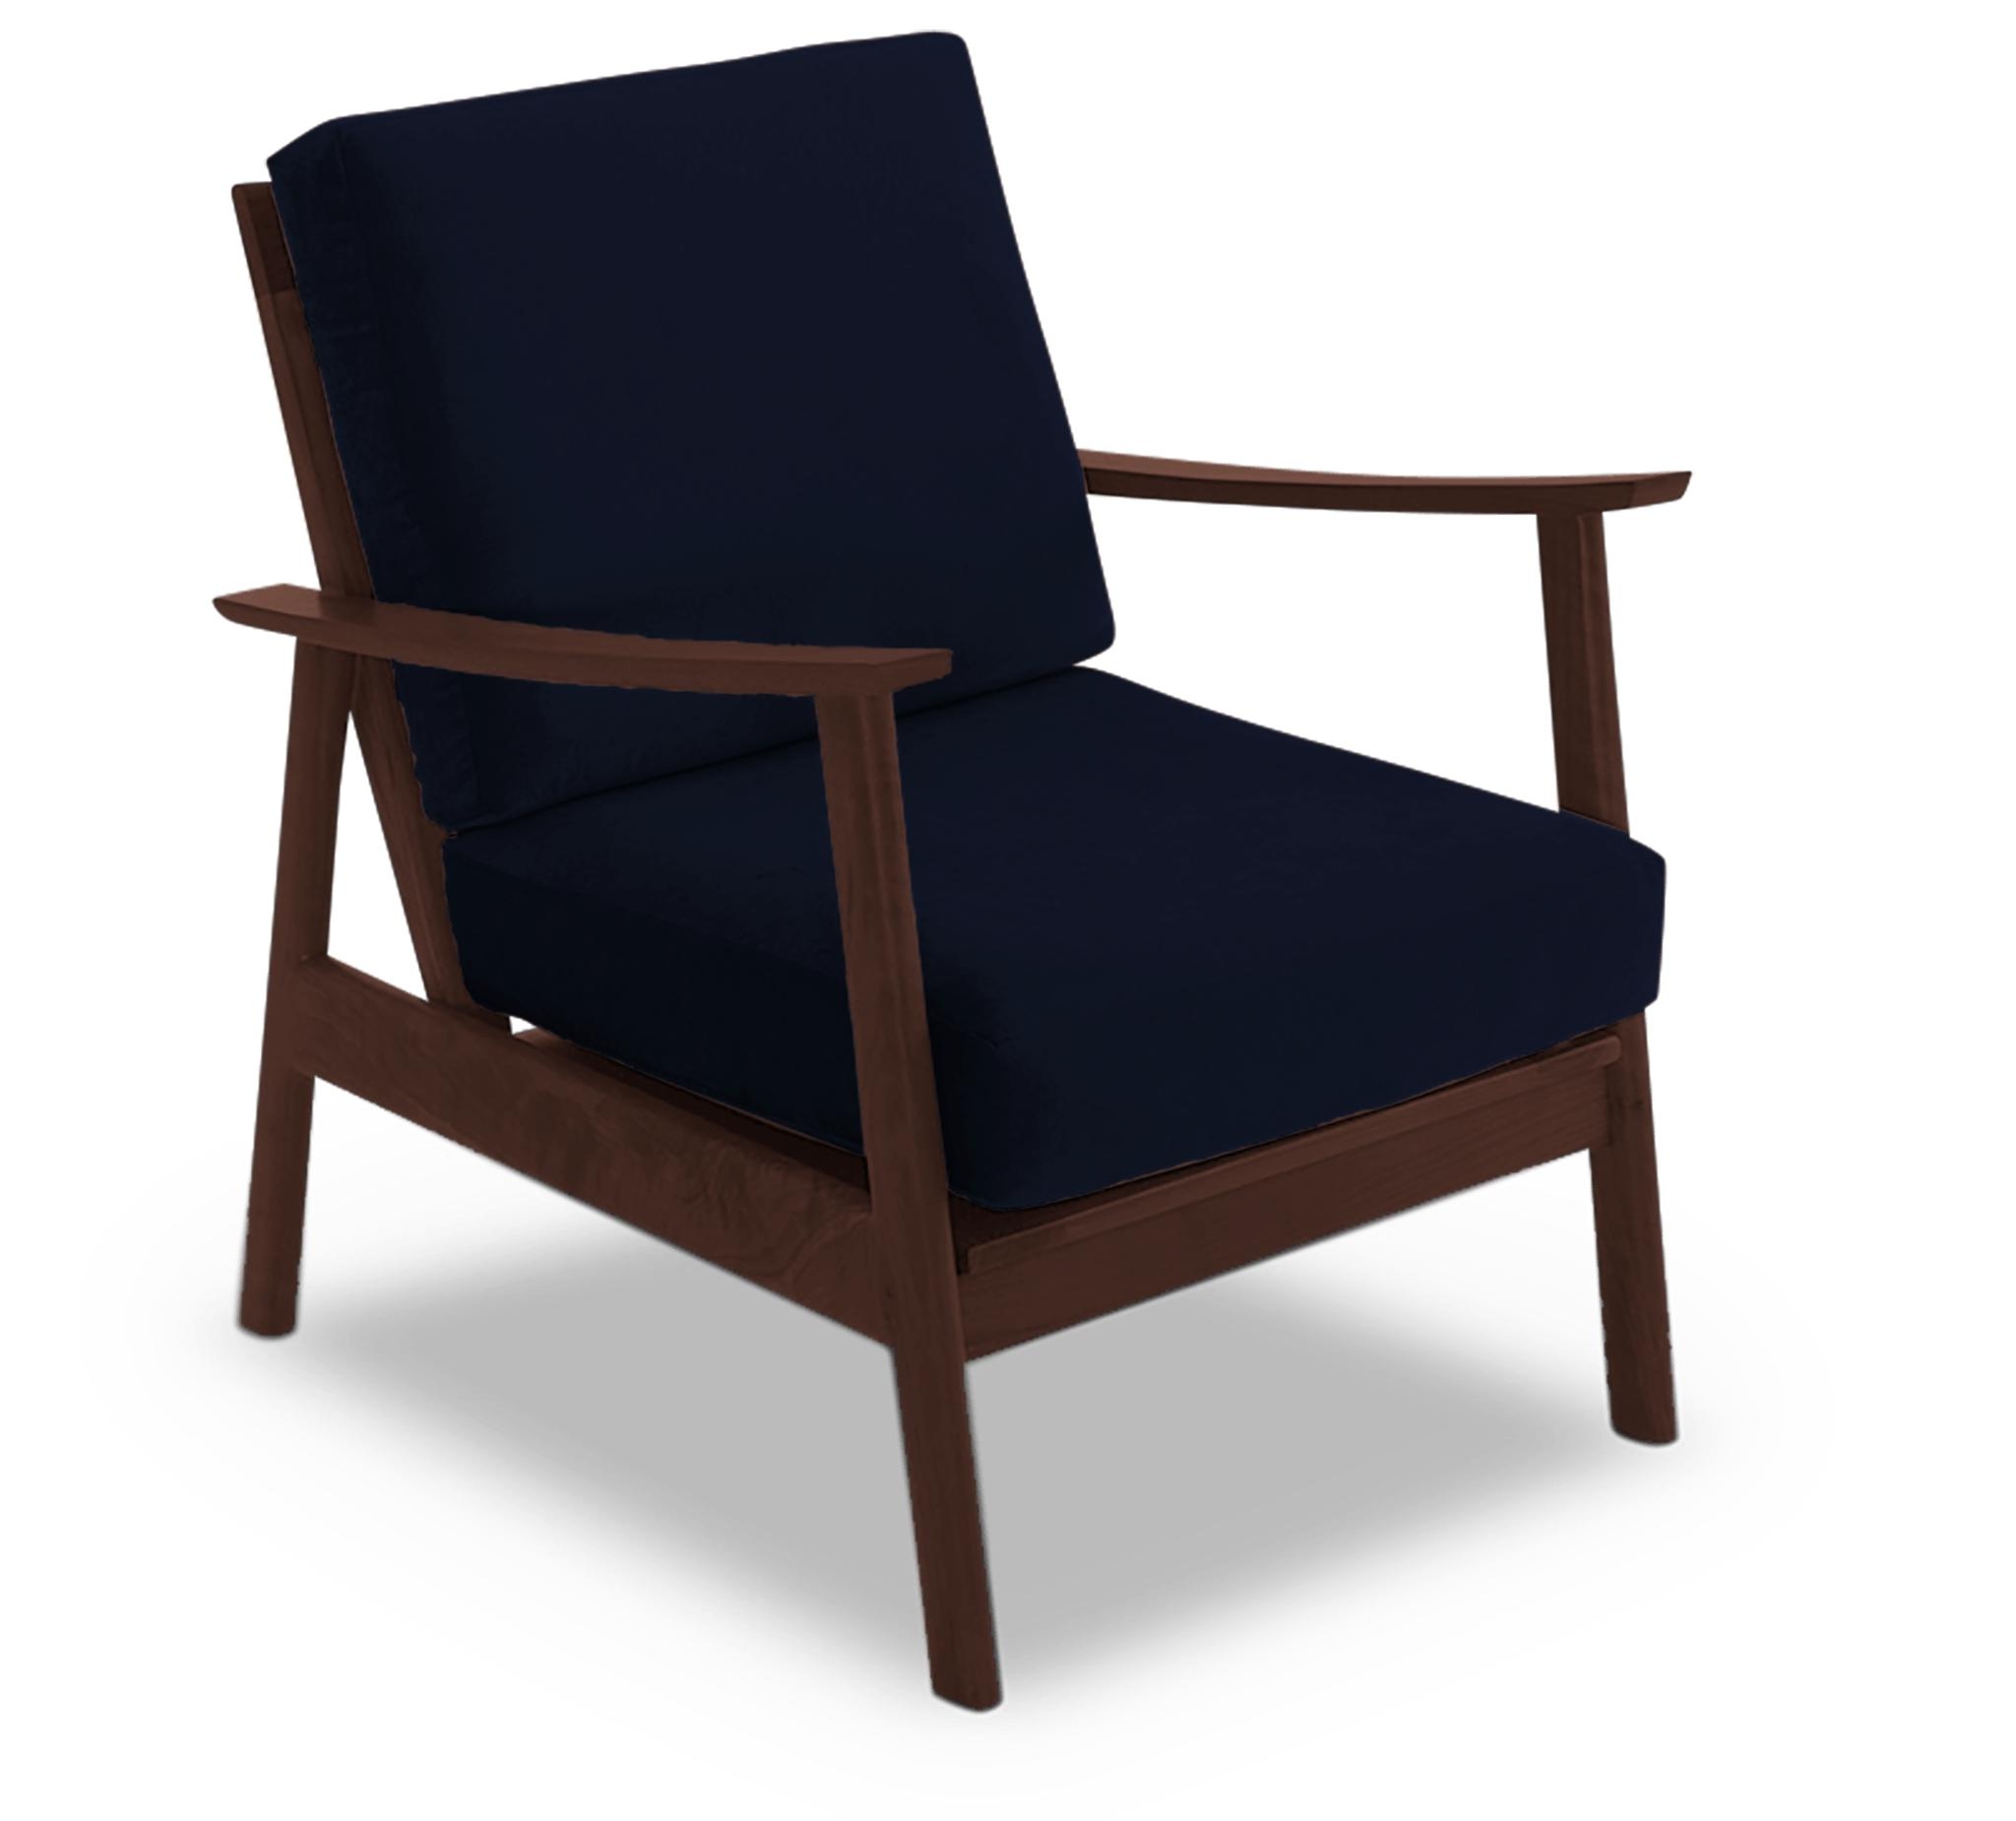 Blue Paley Mid Century Modern Chair - Bentley Indigo - Walnut - Image 1